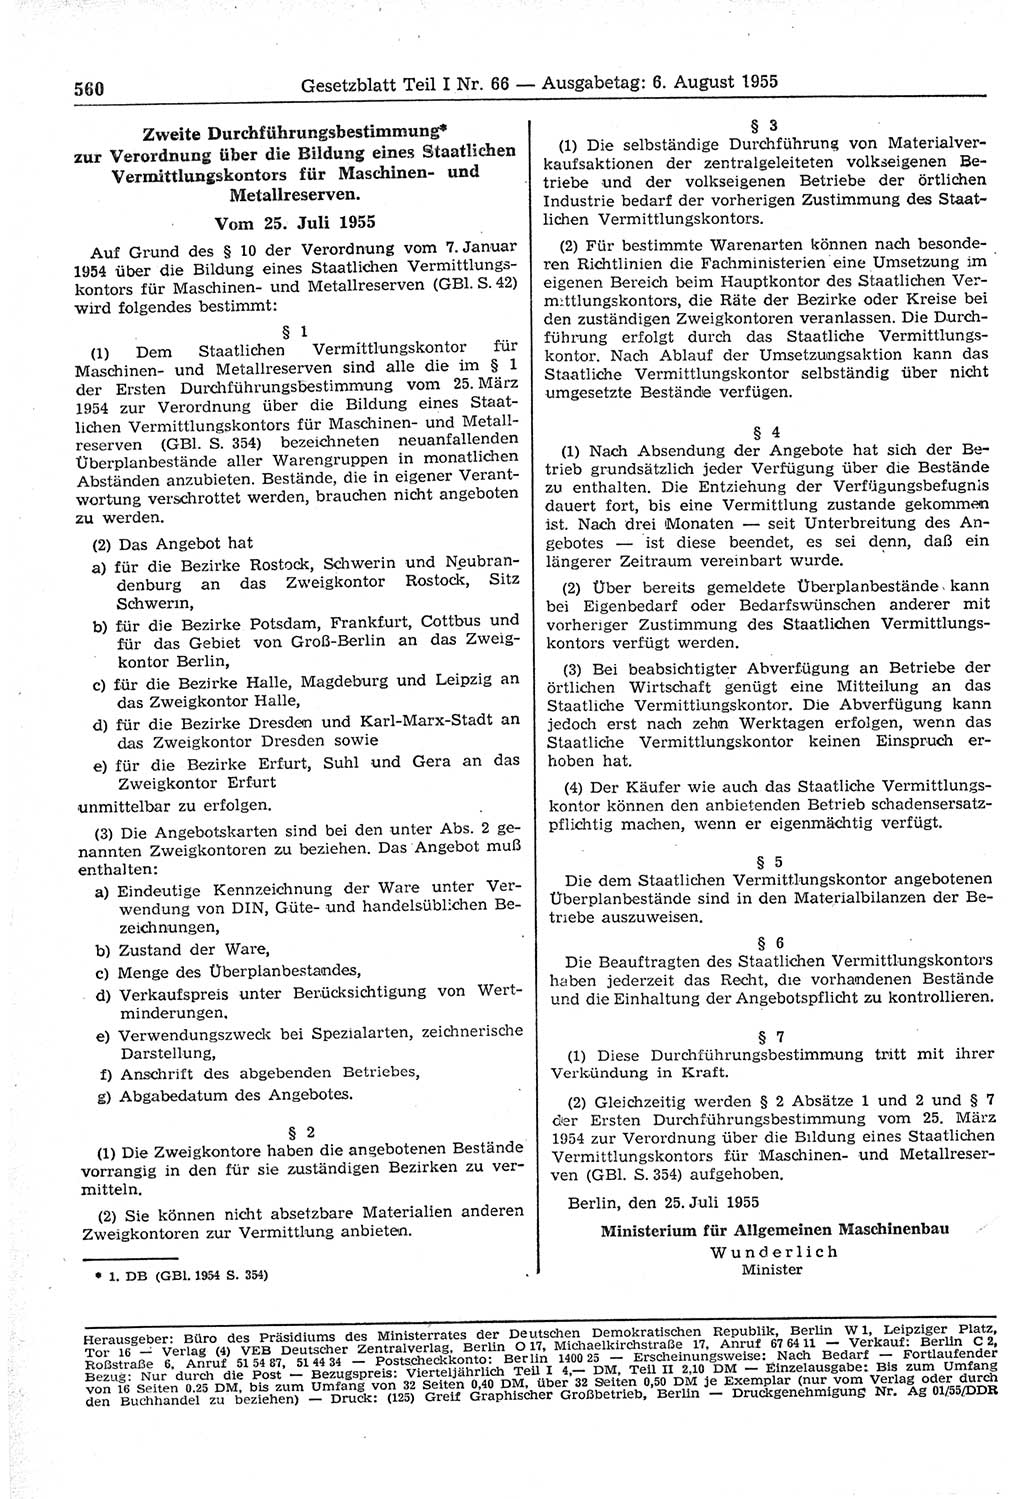 Gesetzblatt (GBl.) der Deutschen Demokratischen Republik (DDR) Teil Ⅰ 1955, Seite 560 (GBl. DDR Ⅰ 1955, S. 560)